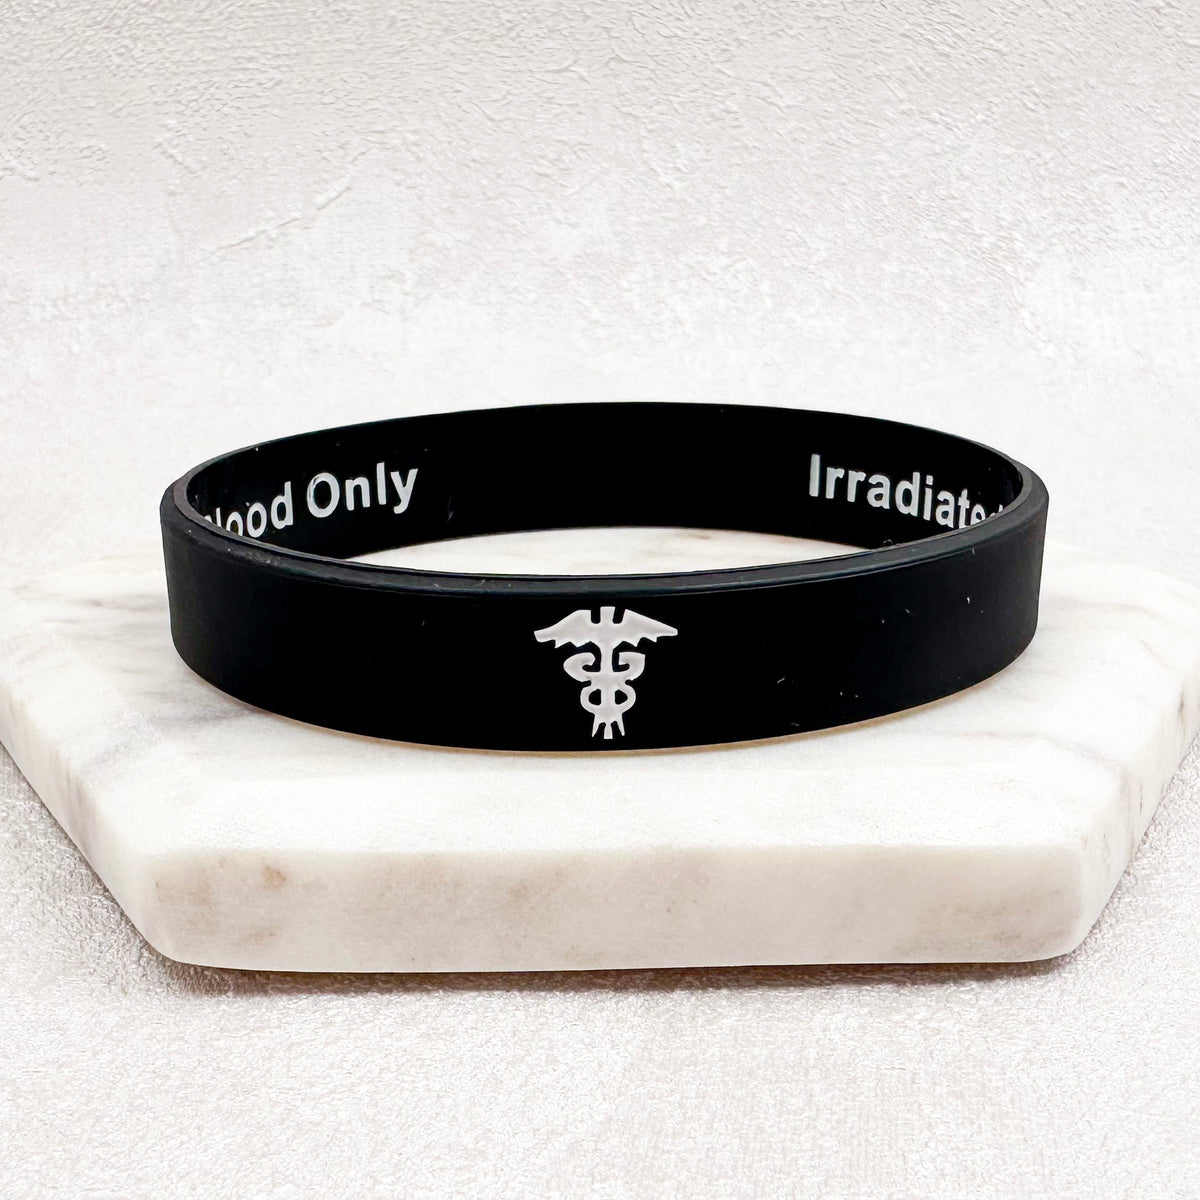 irradiated blood medical bracelet id jewellery